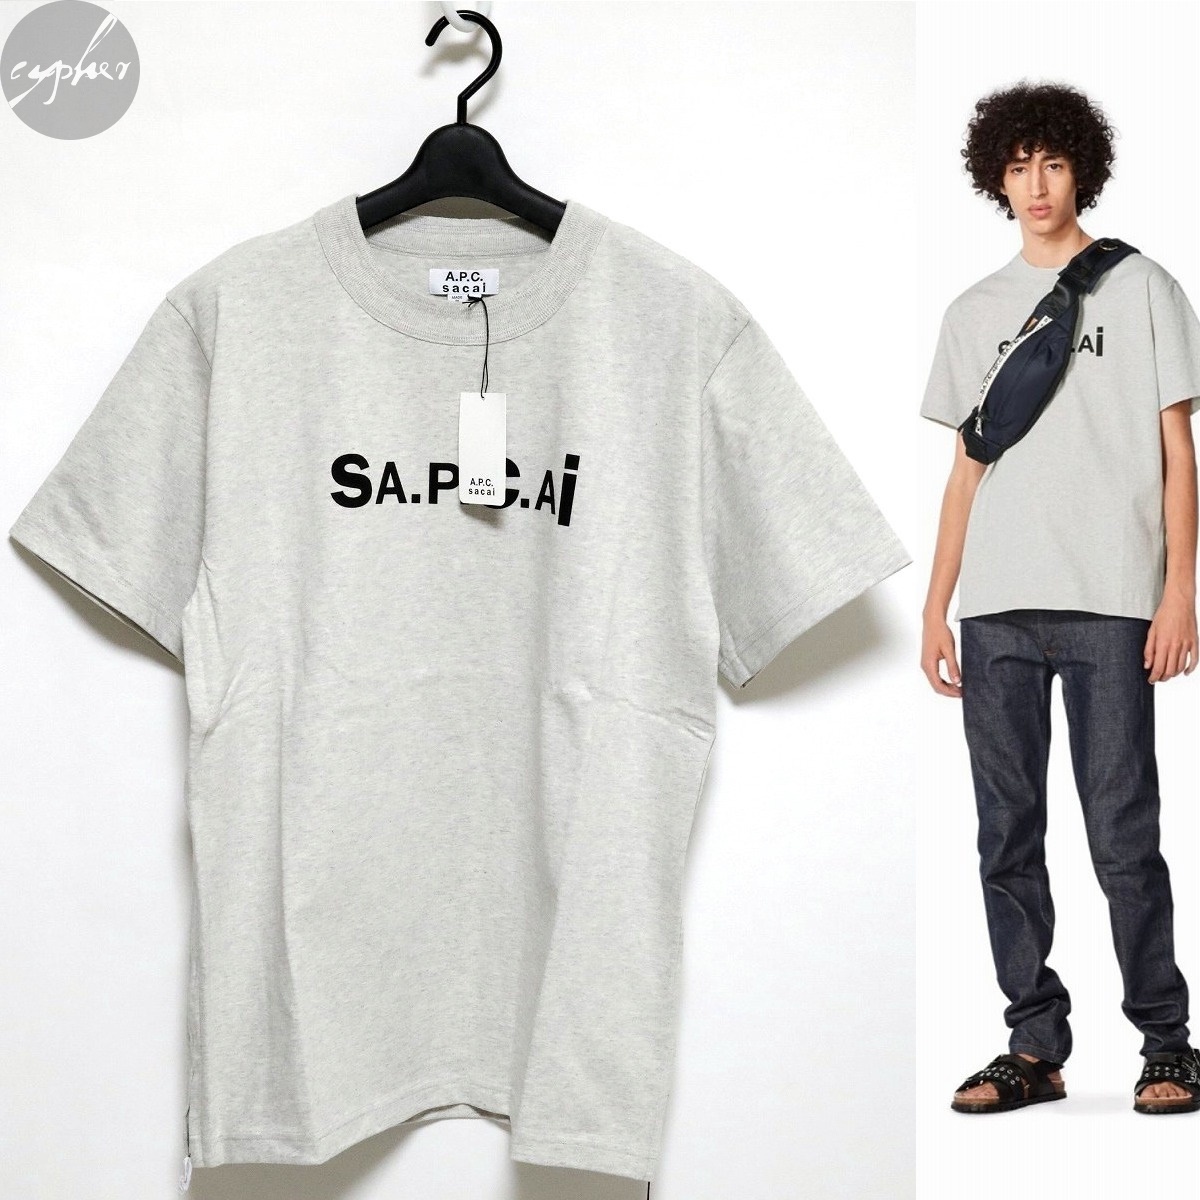 公式の店舗 Tシャツ KIYO A.P.C. Sacai 21SS 新品 M グレー 灰 半袖 SA